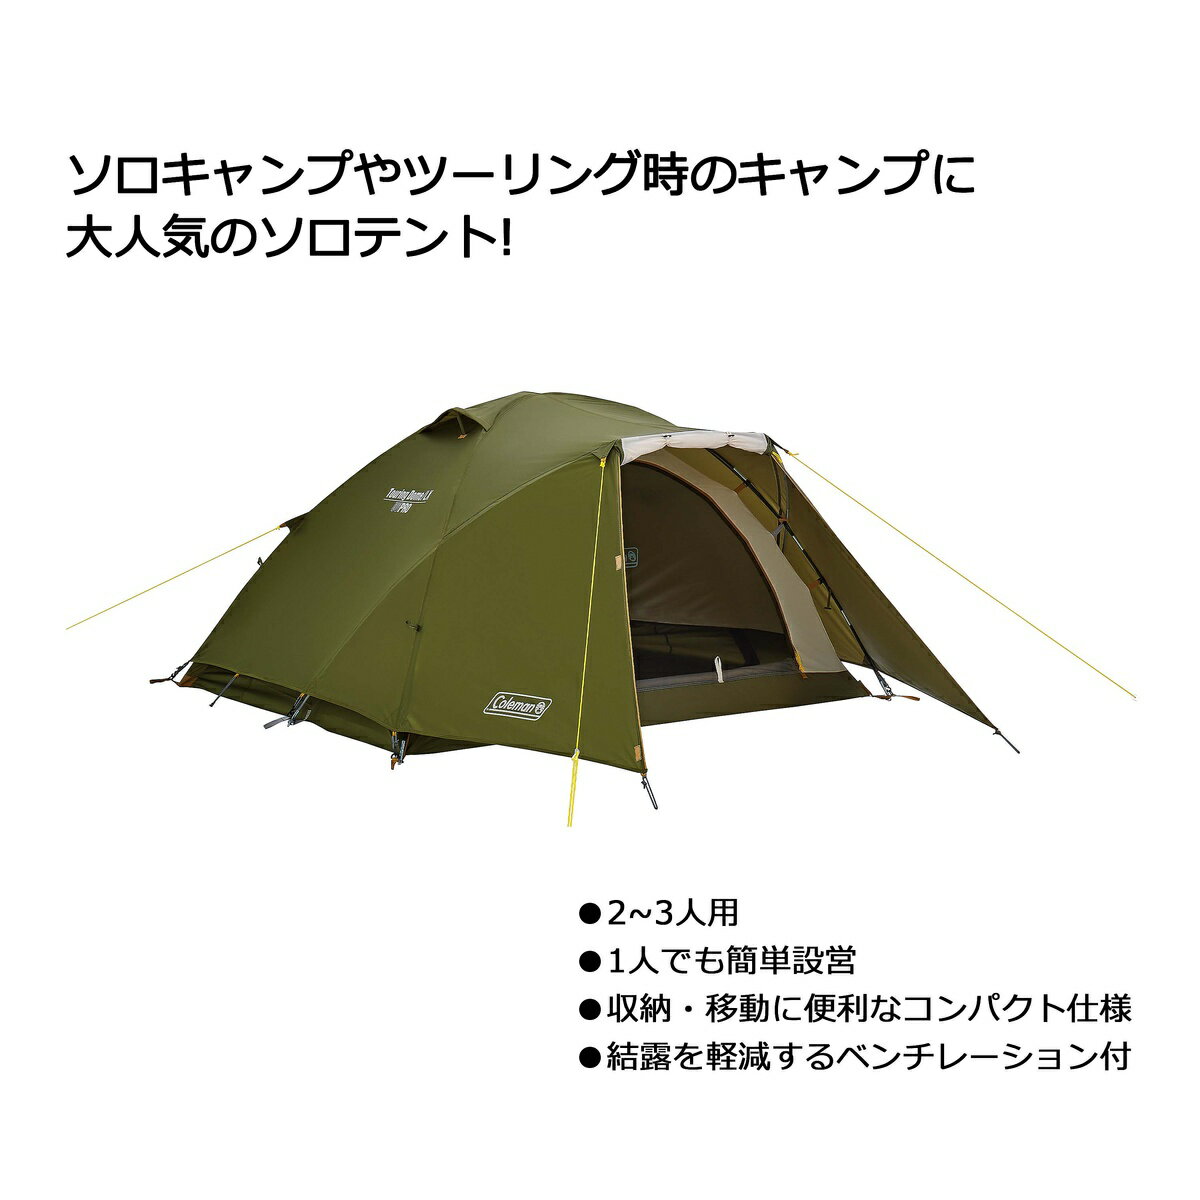 ● コールマン(COLEMAN) ツーリングドーム/LX キャンプ用品 ソロ その他テント 2000038142